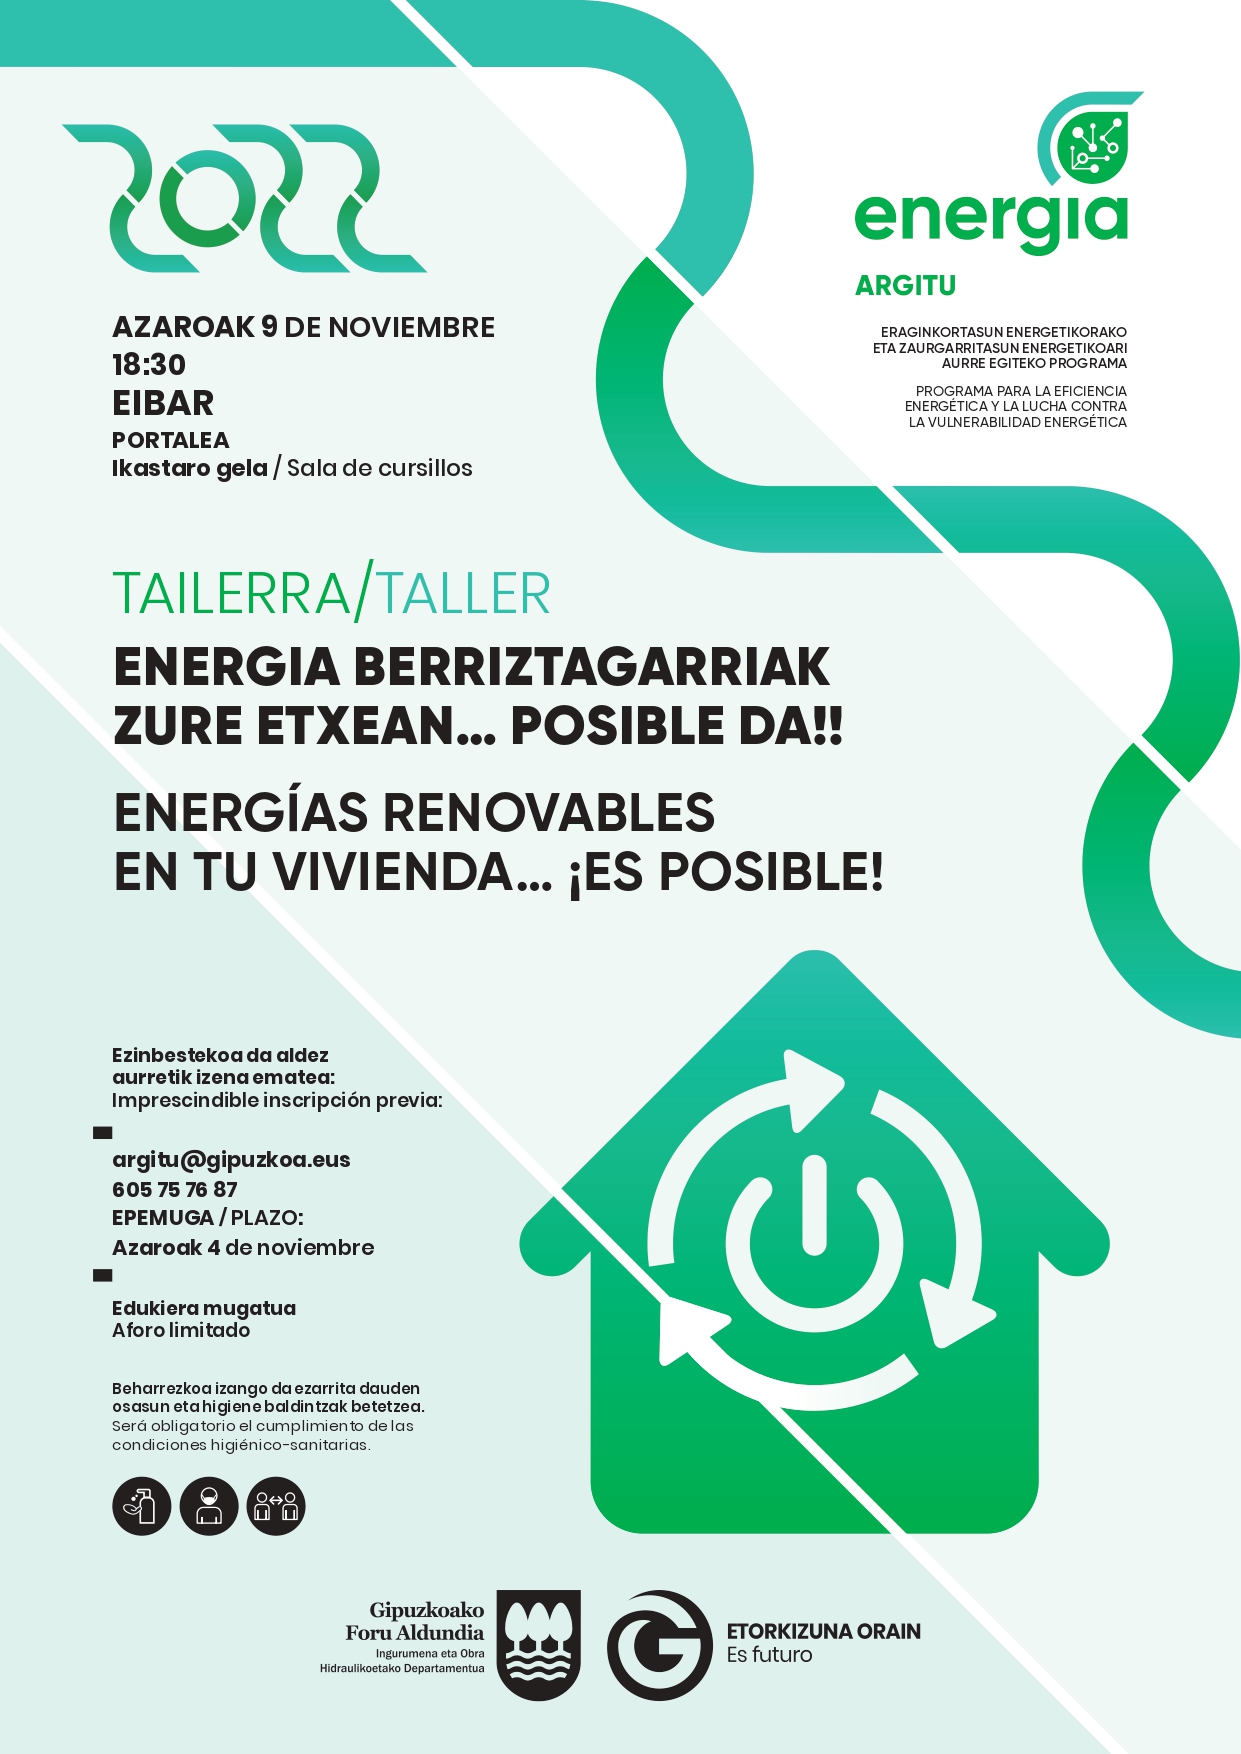 Taller práctico dirigido a la instalación de energías renovables en las viviendas.